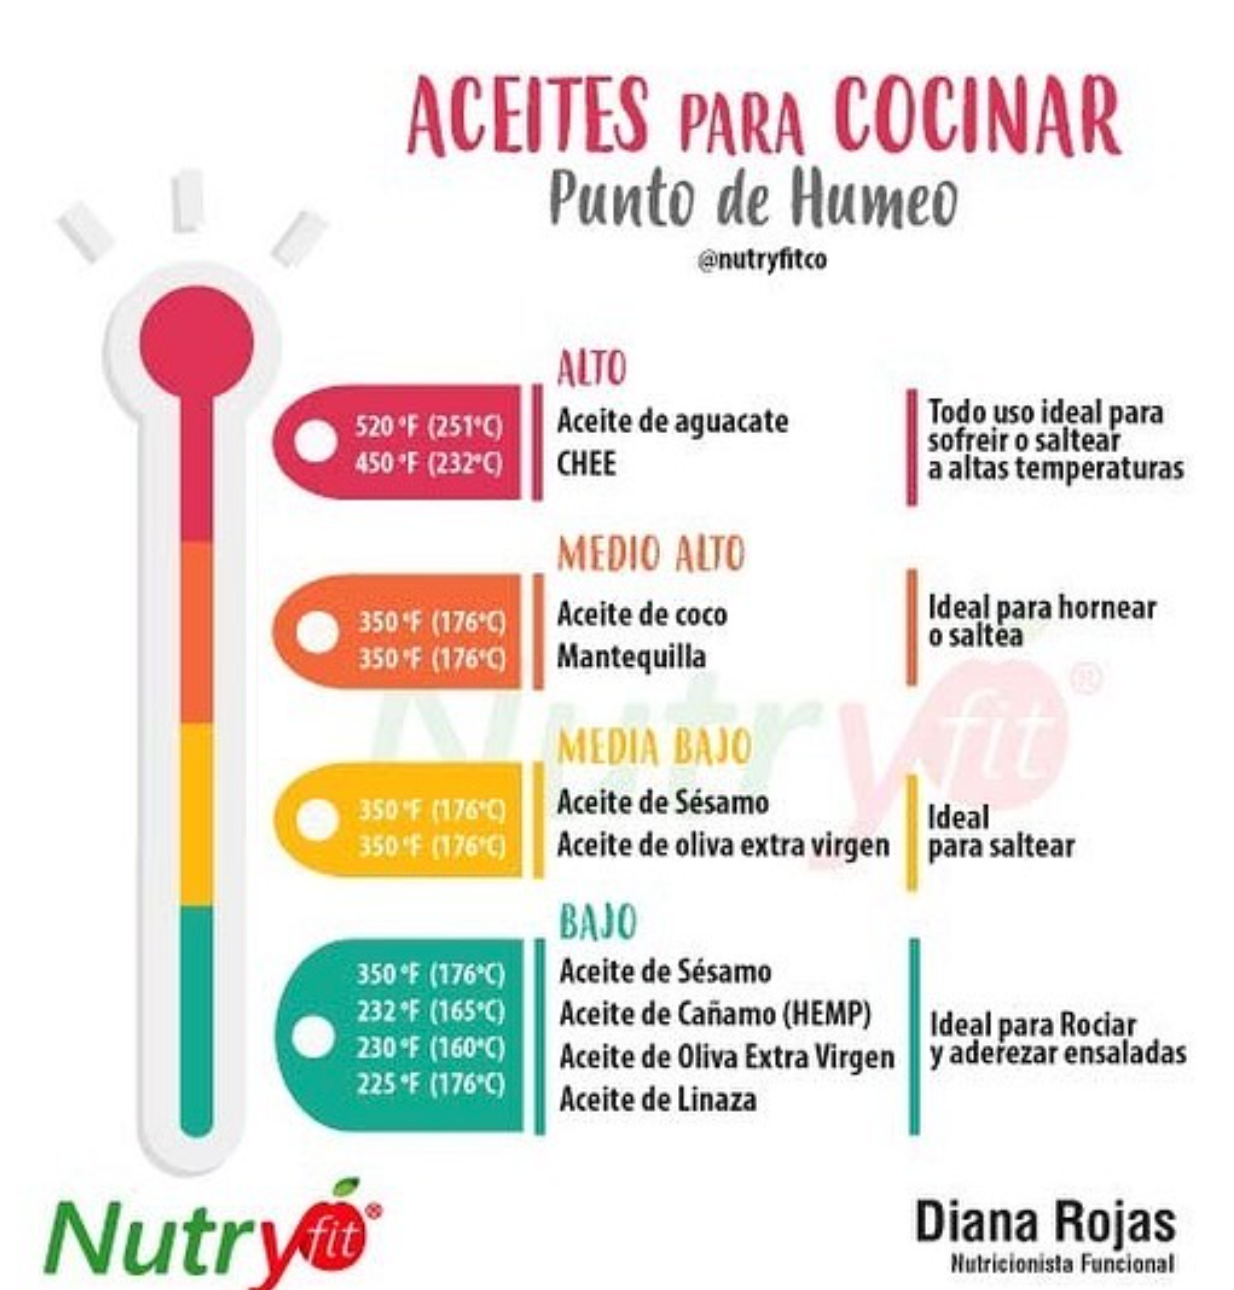 nutricionista funcional, Nutricionista Diana Rojas, Nutryfitco, nutricionista bogota, mejor nutricionista, aceite para cocinar